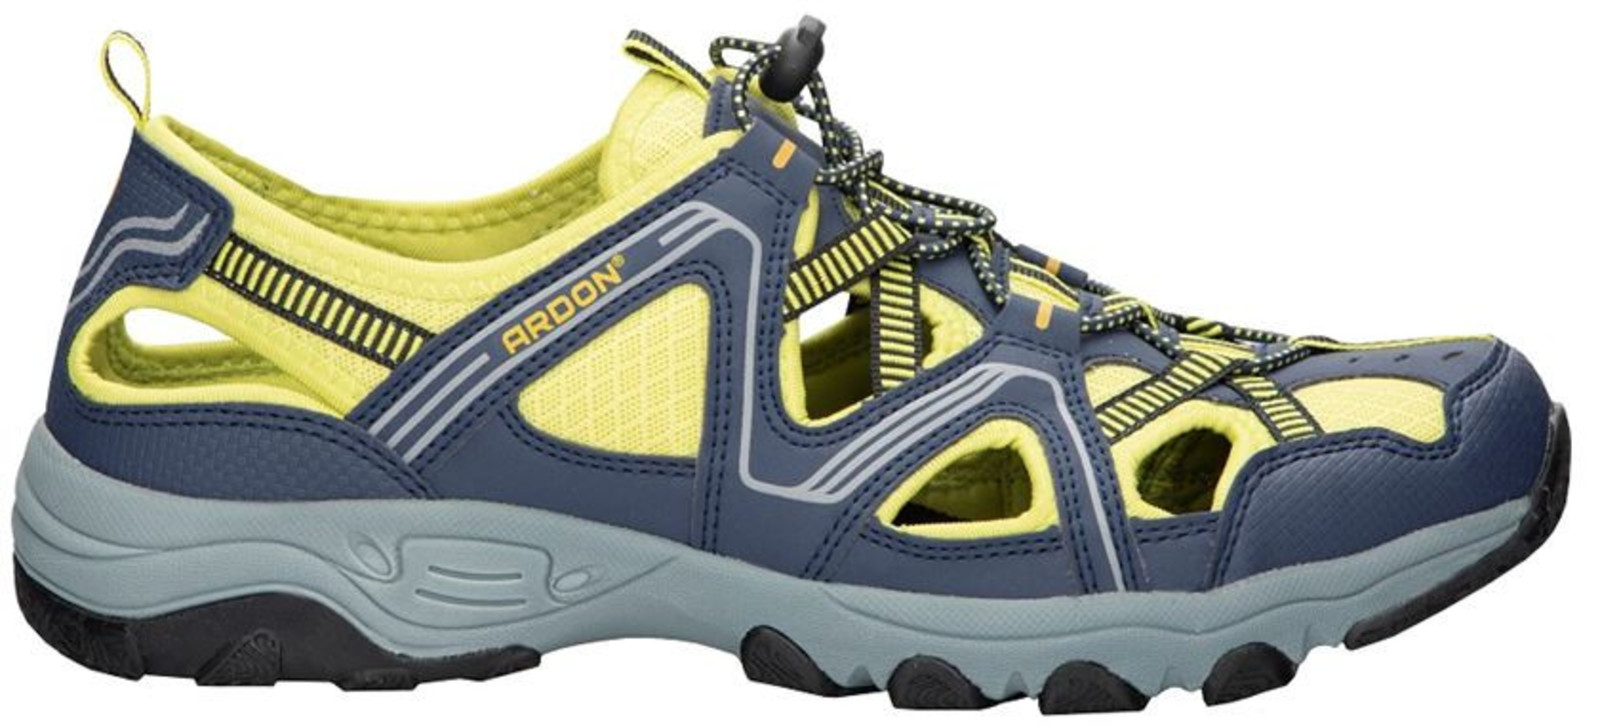 Trekové sandále Ardon Strand - veľkosť: 41, farba: modrá/žltá